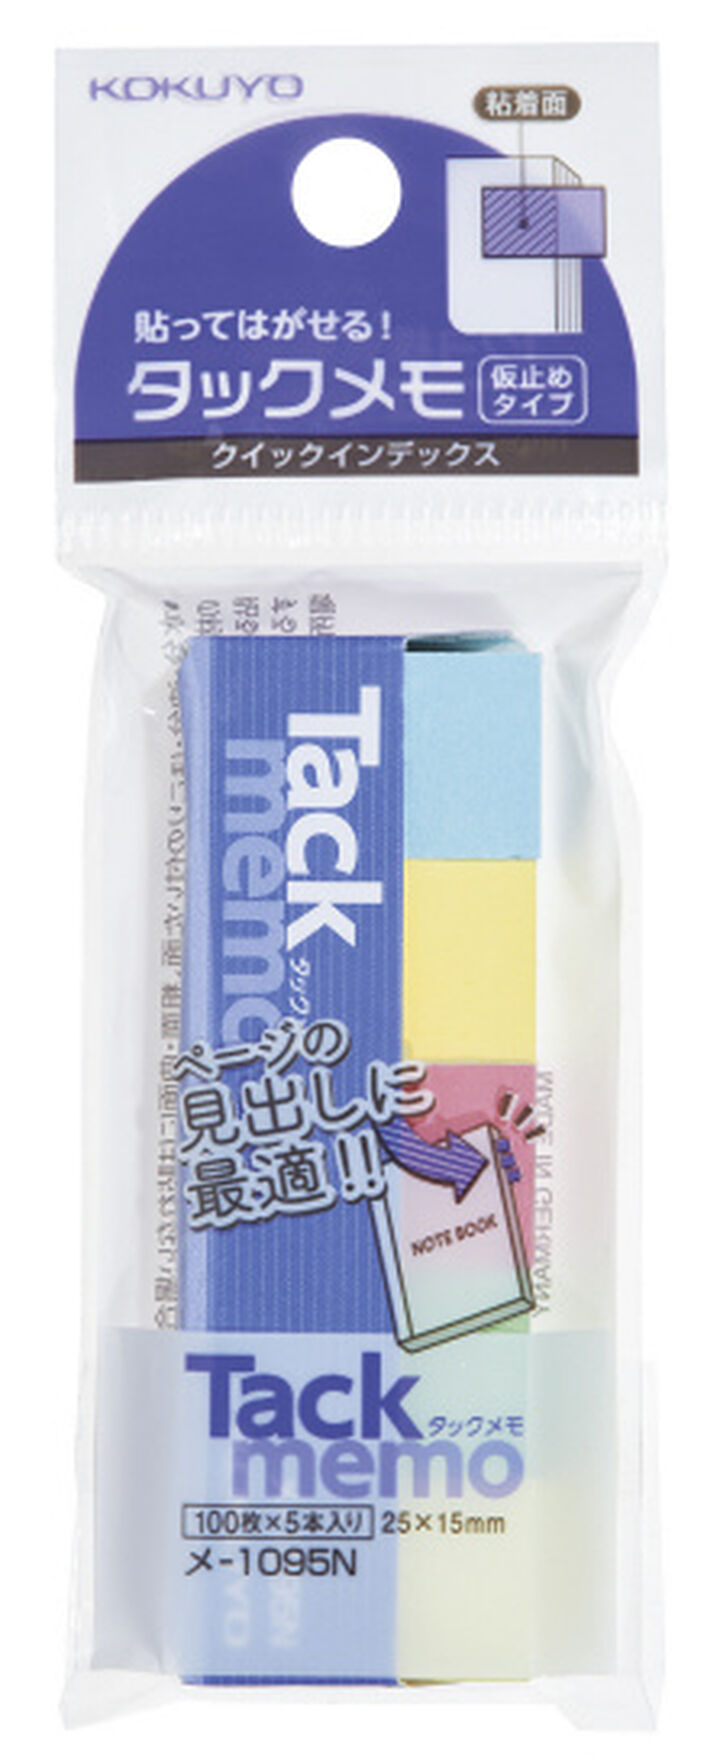 Tack Memo Quick Index Sticky Notes 1.5 cm x 2.5 cm,Mixed, medium